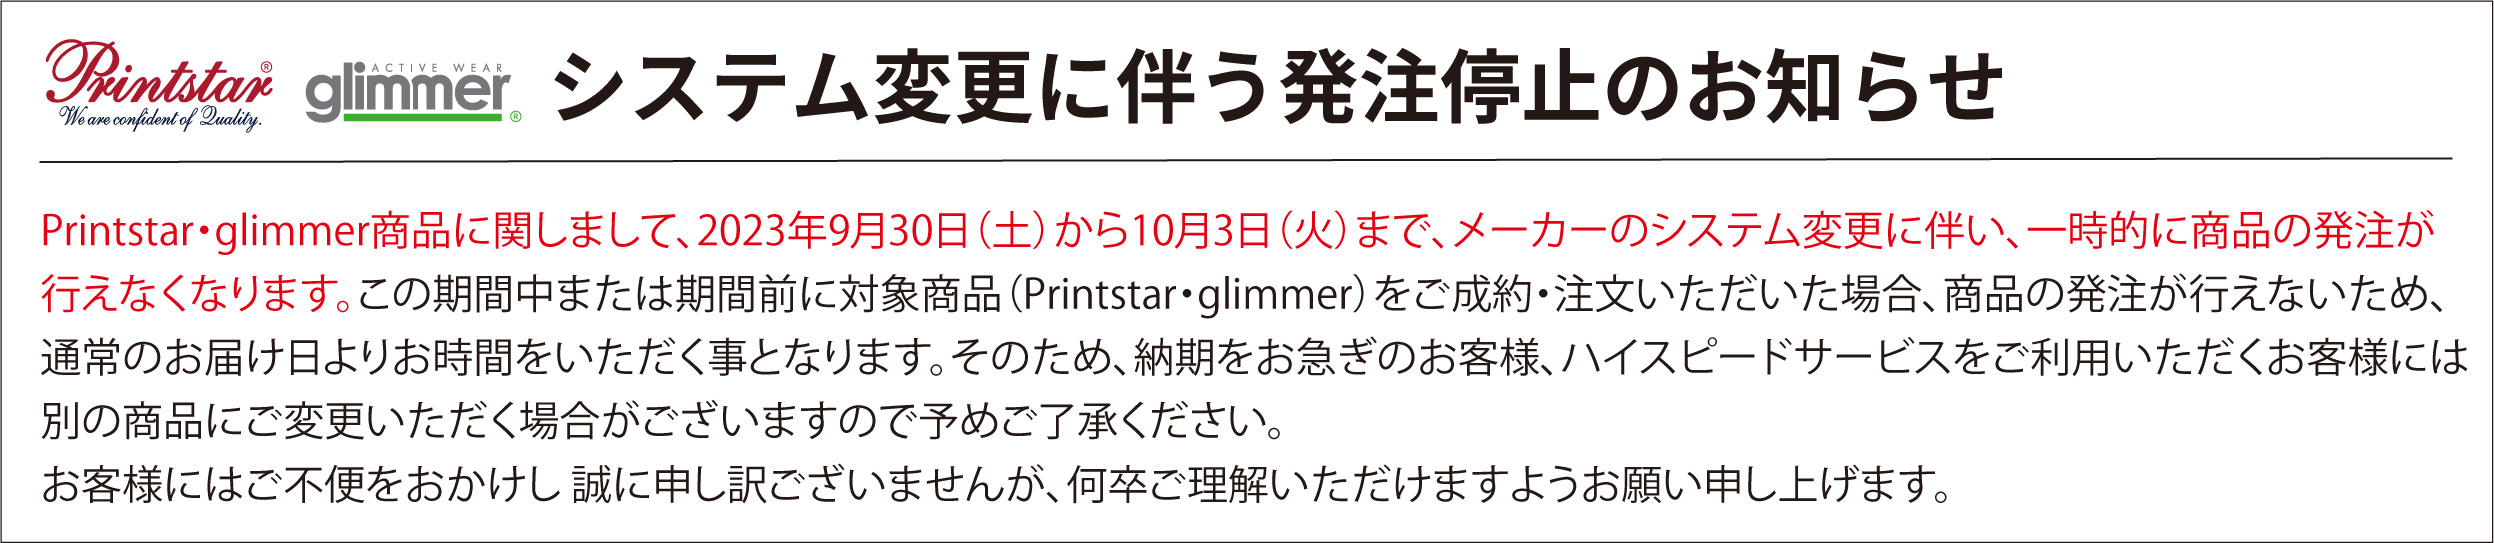 printstar,glimmer販売期間停止について